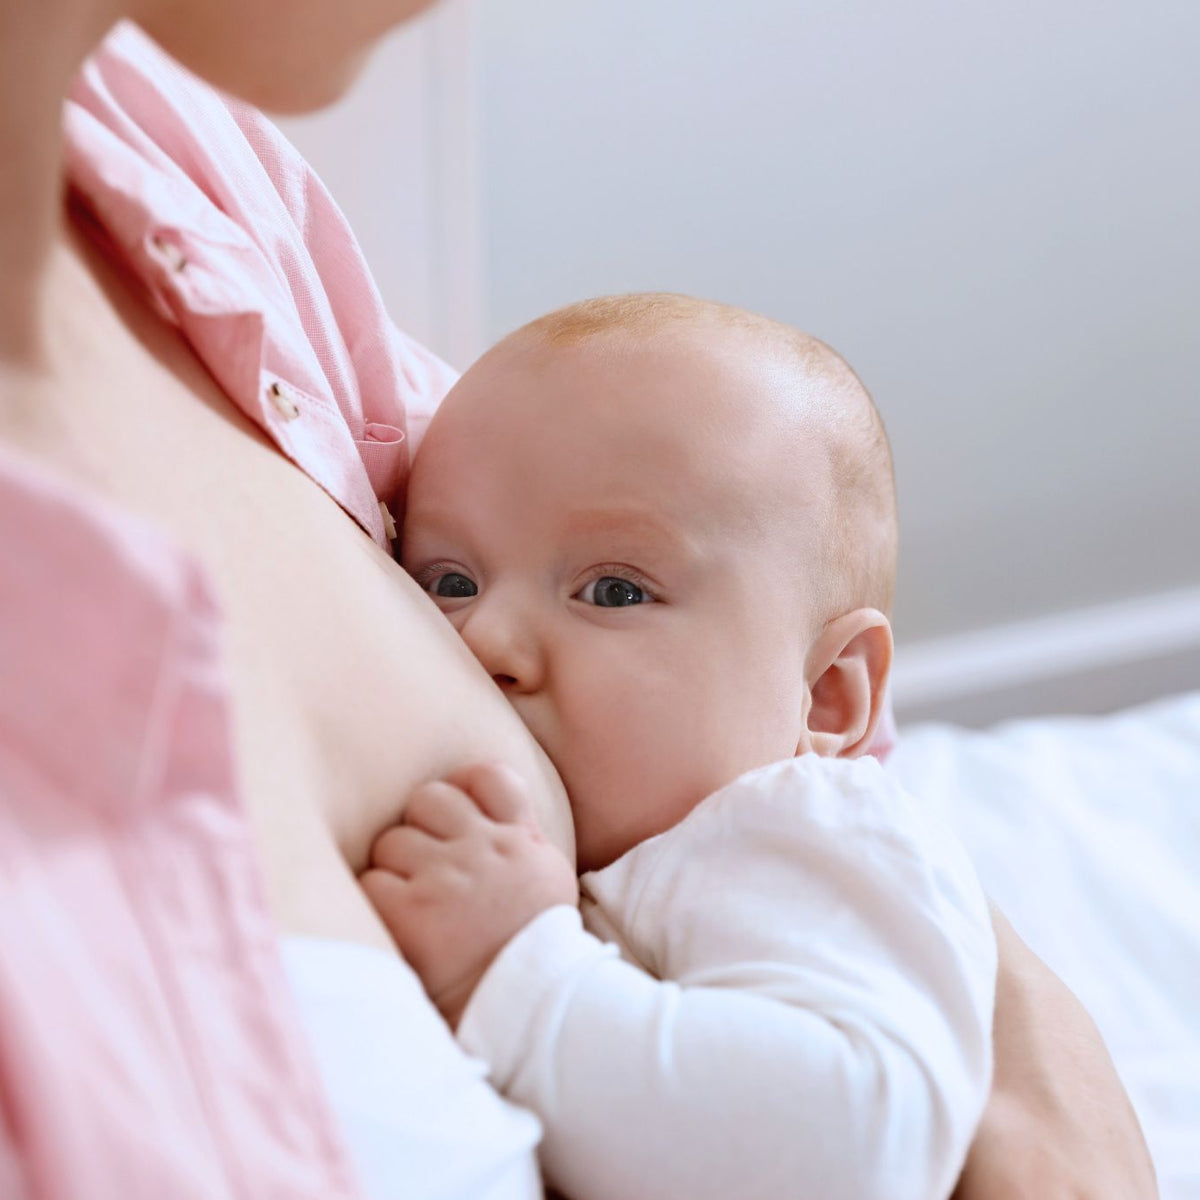 Cuña anti-reflujo bebe - Evita los reflujos de tu bebé